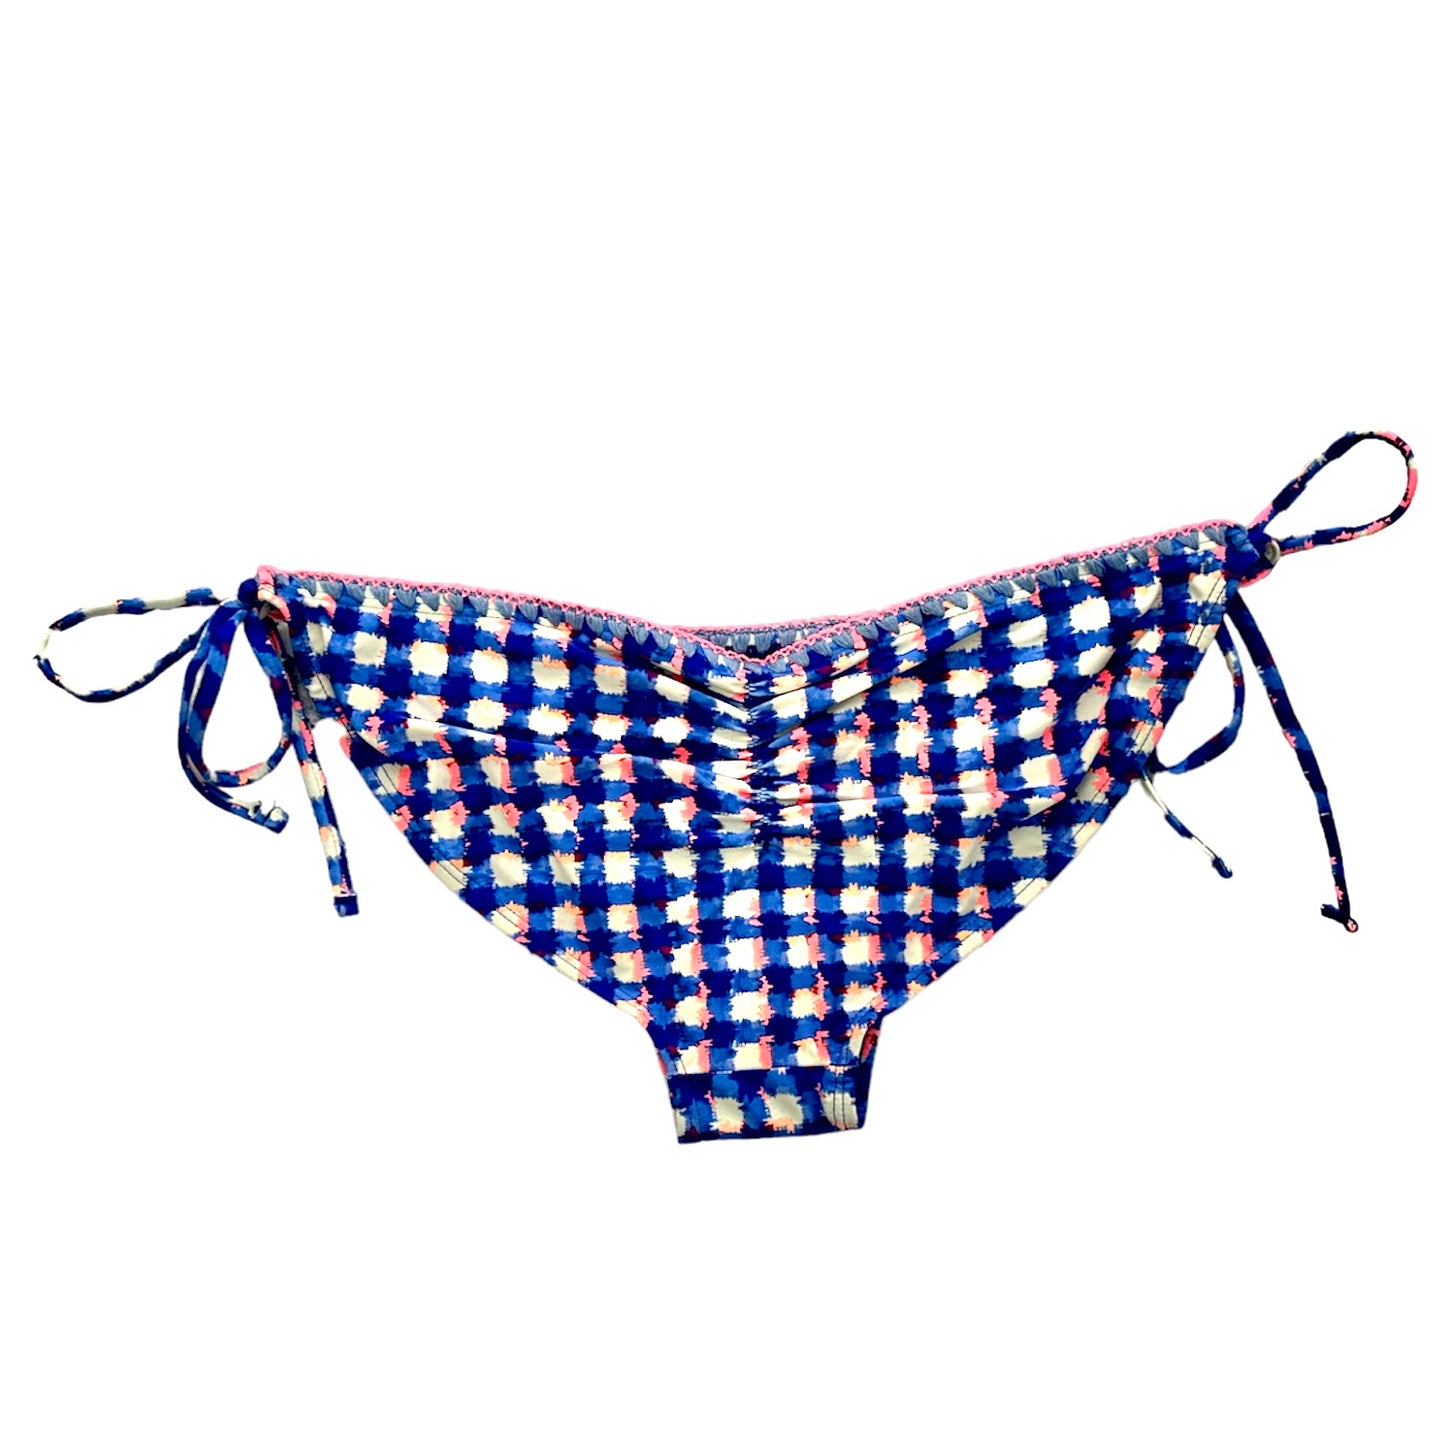 Blue/Pink/White Side Tie Bikini Bottoms Size L Women's Swimwear